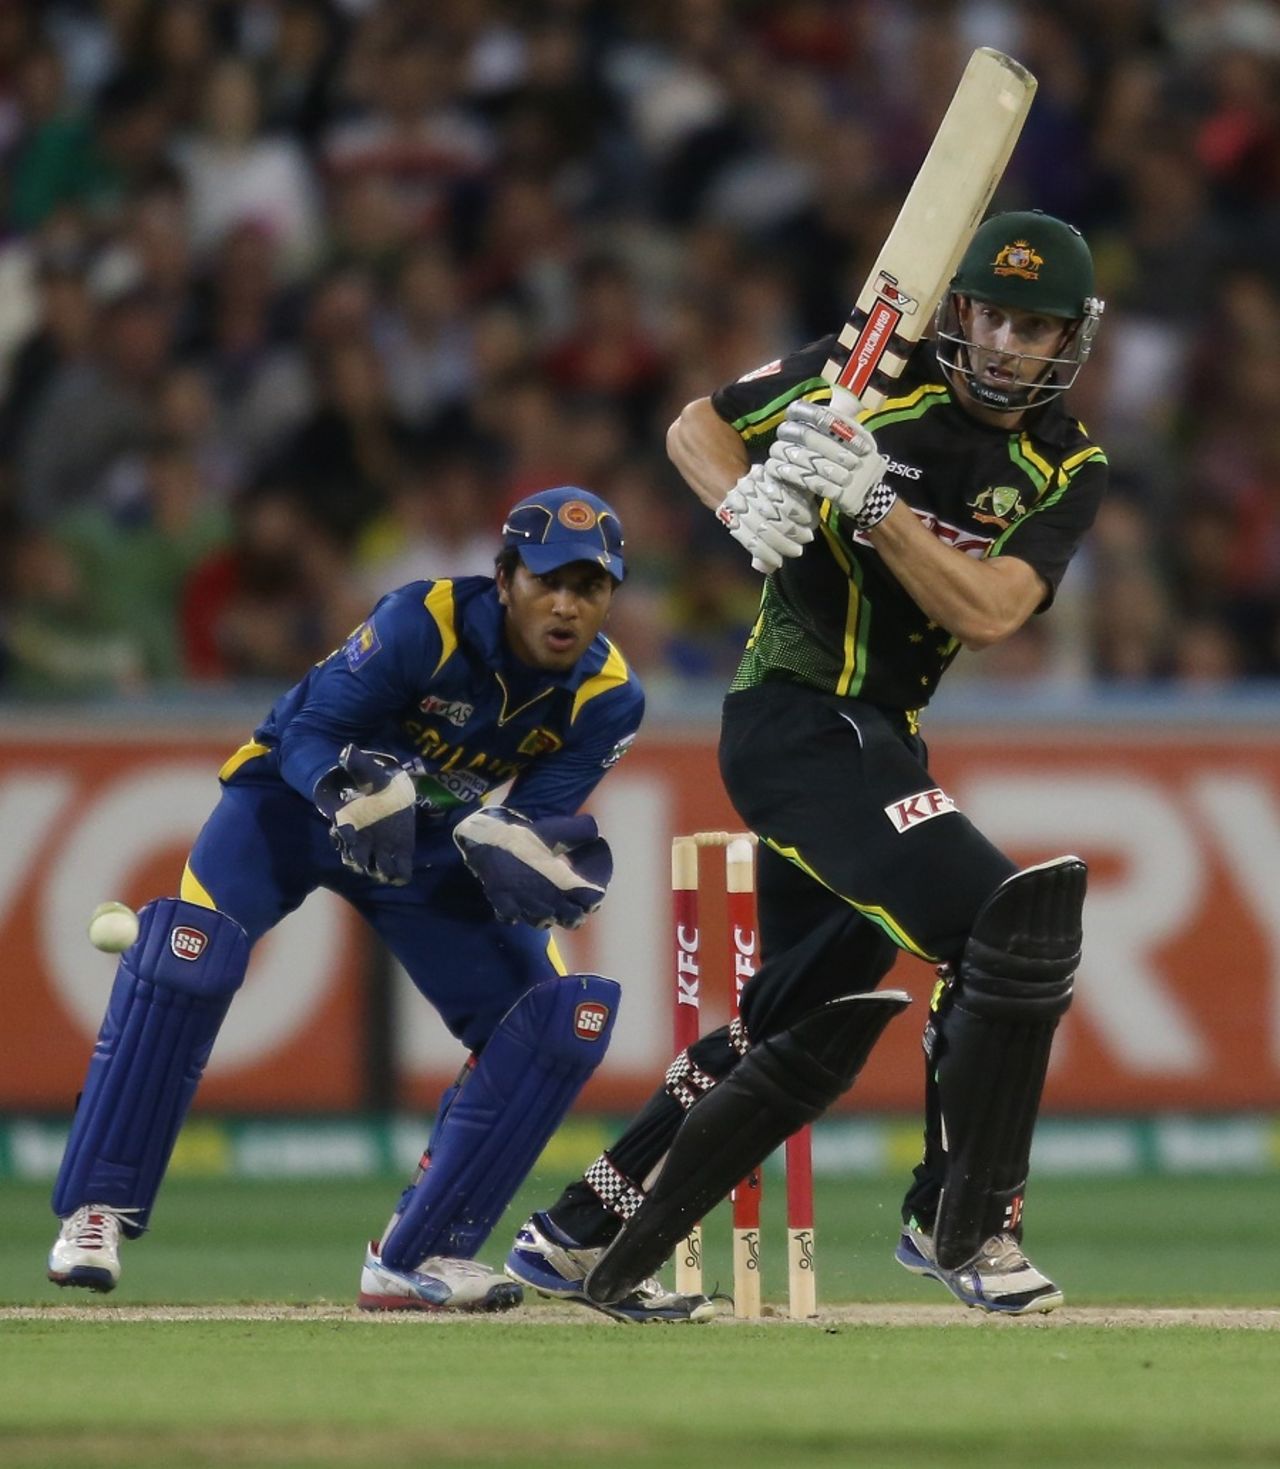 Shaun Marsh's knock of 47 went in vain, Australia v Sri Lanka, 2nd T20, Melbourne, January 28, 2013